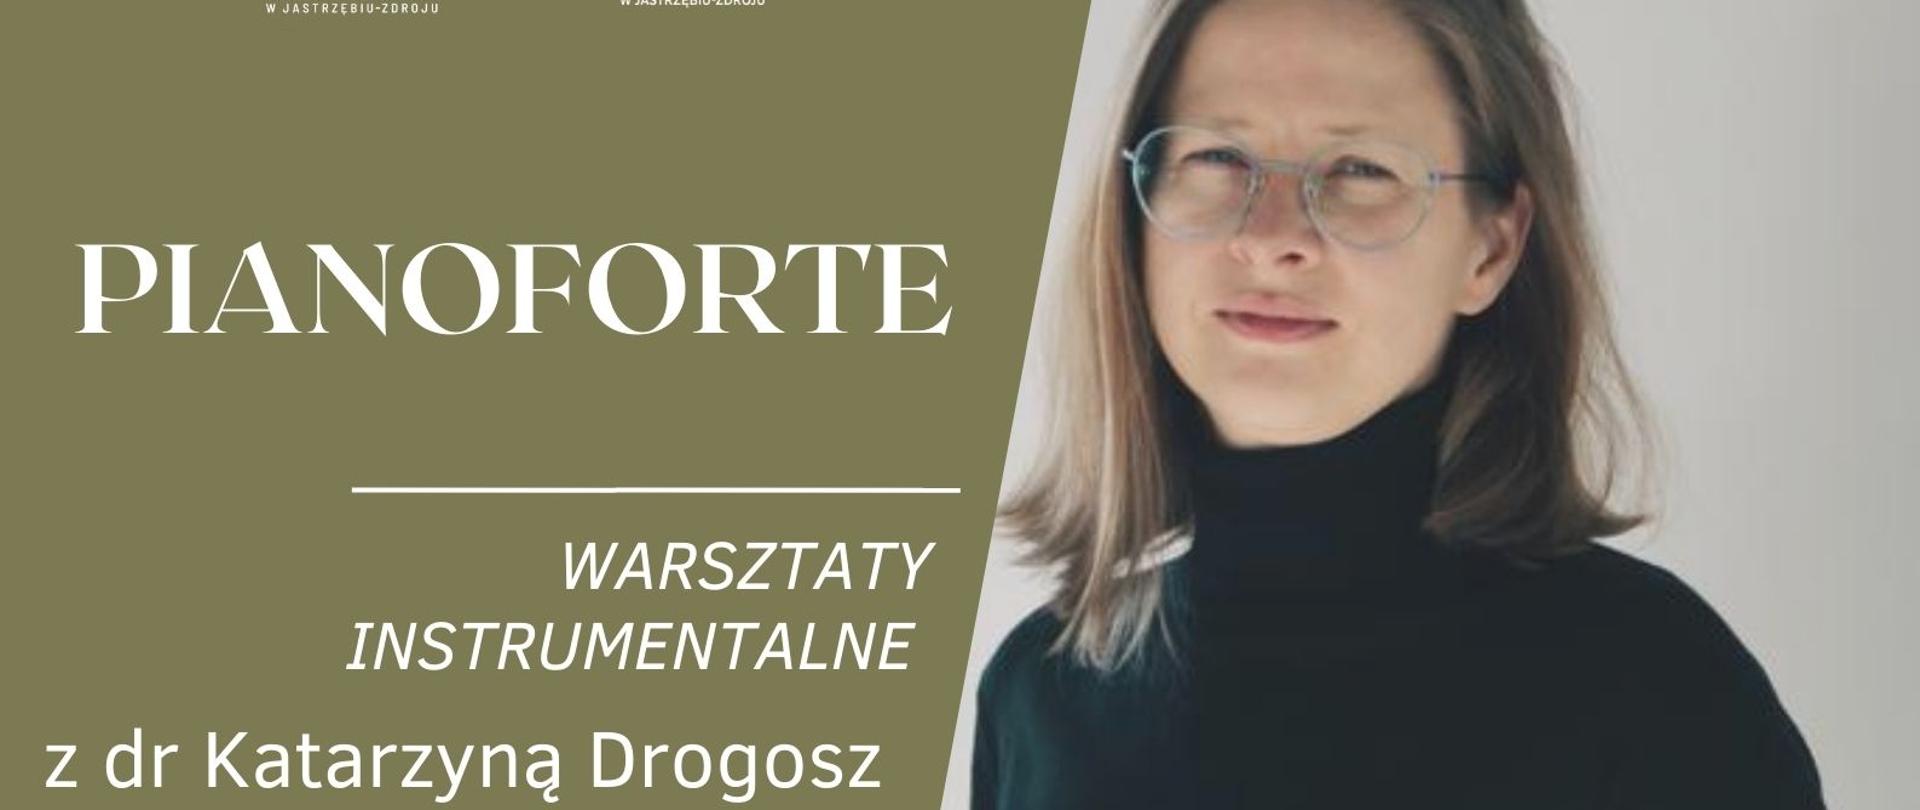 Plakat informacyjny o warsztatach z Katarzyną Drogosz, w dniu 28.03.2023 o godz. 14.00,
Na plakacie artystka i fortepian